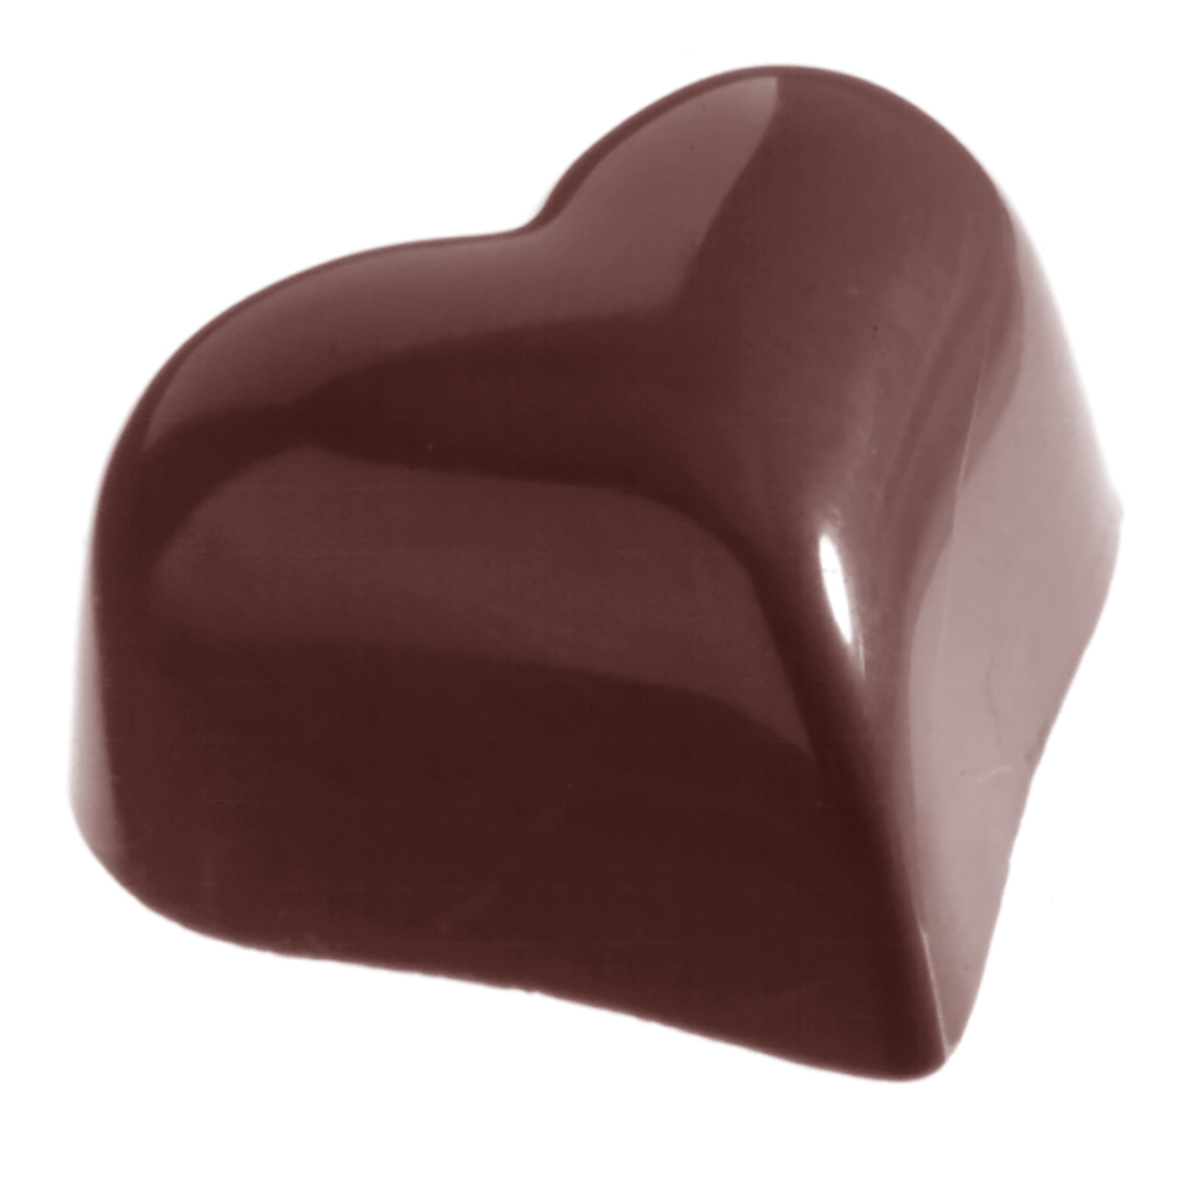 Se Professionel chokoladeform i polycarbonat - Small puffy heart 14 g CW1218 hos BageTid.dk